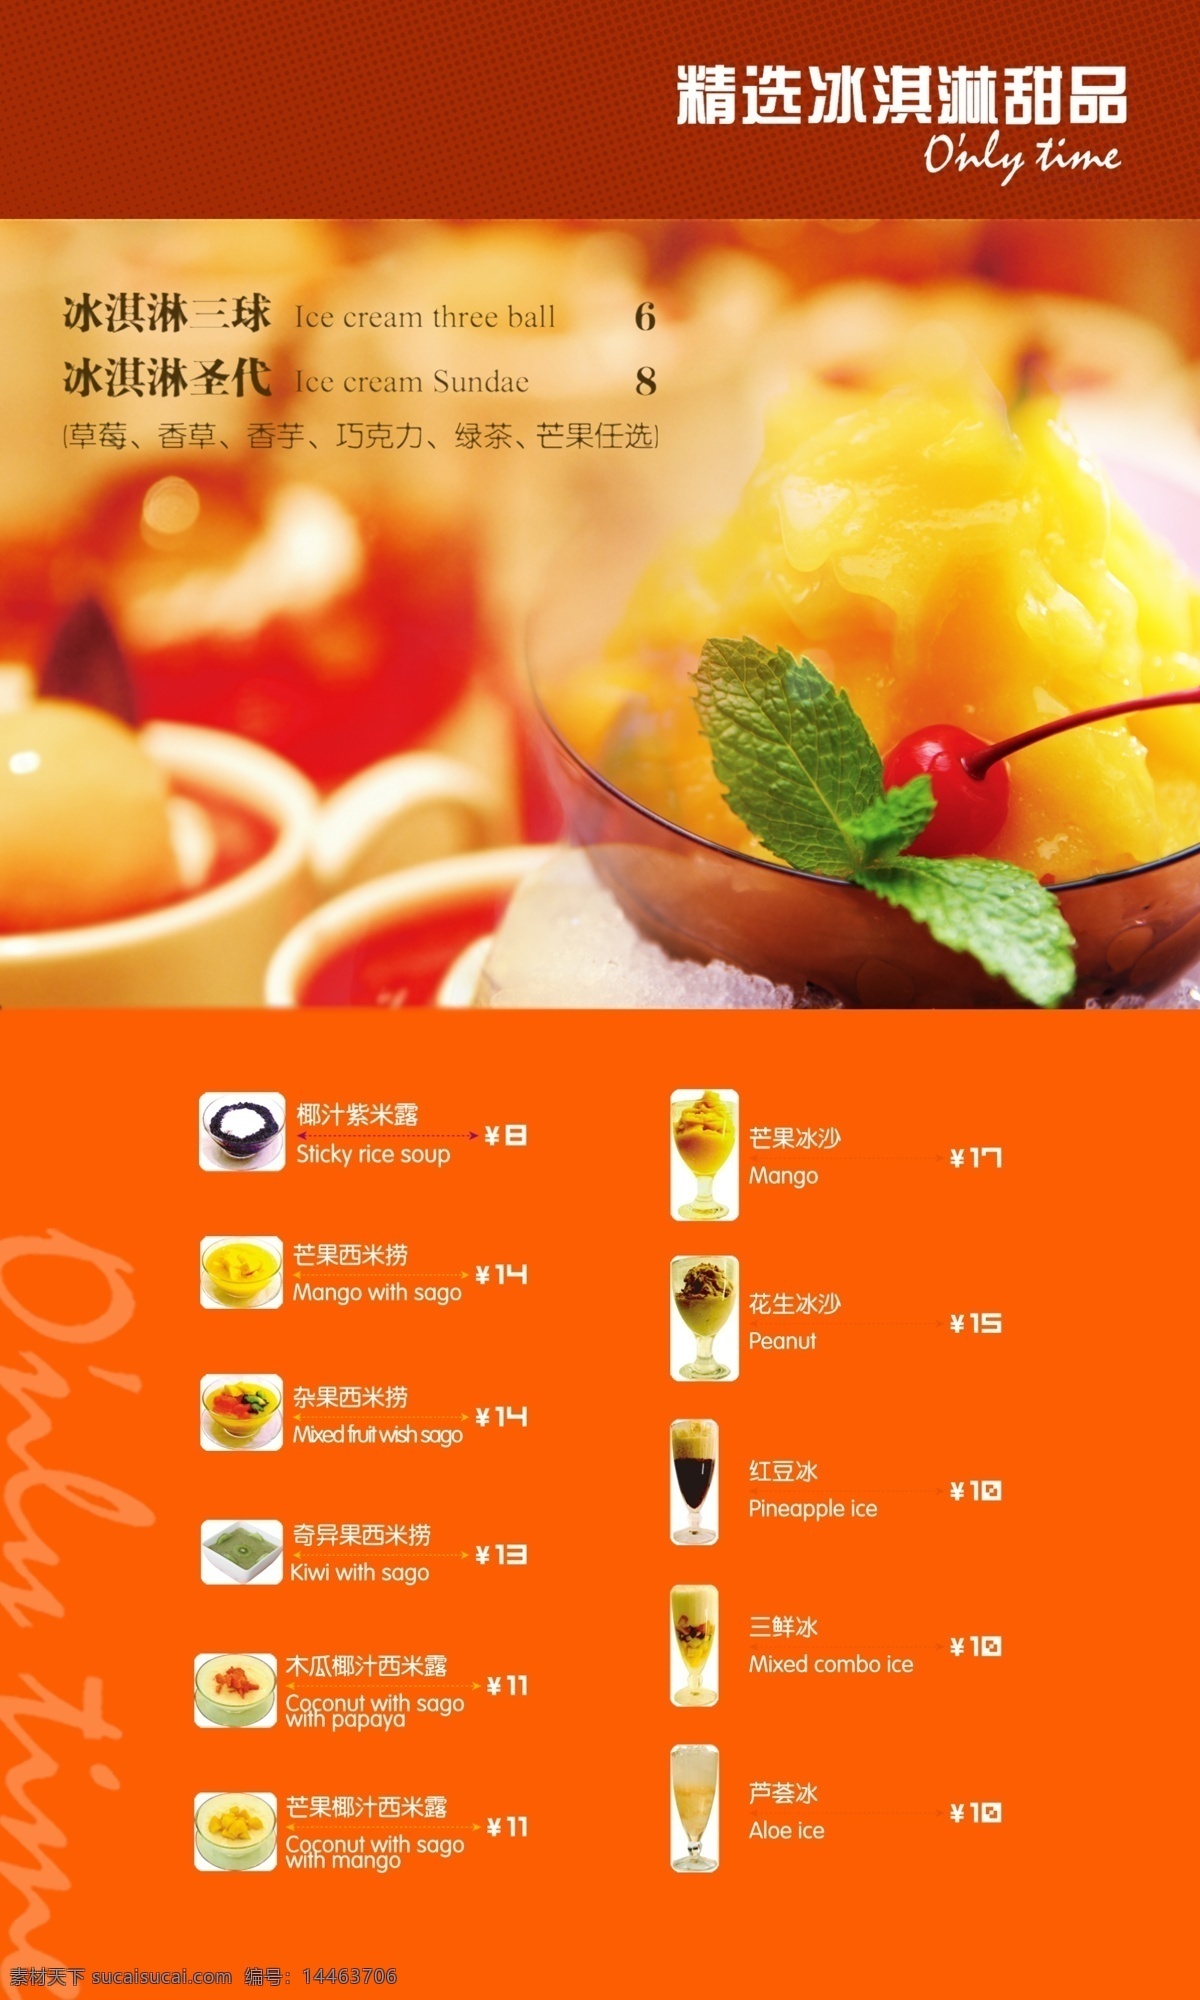 冷饮菜单 冷饮菜谱 海报宣传 冰淇淋菜单 茶饮菜单 夏日菜单素材 海报素材 橙色